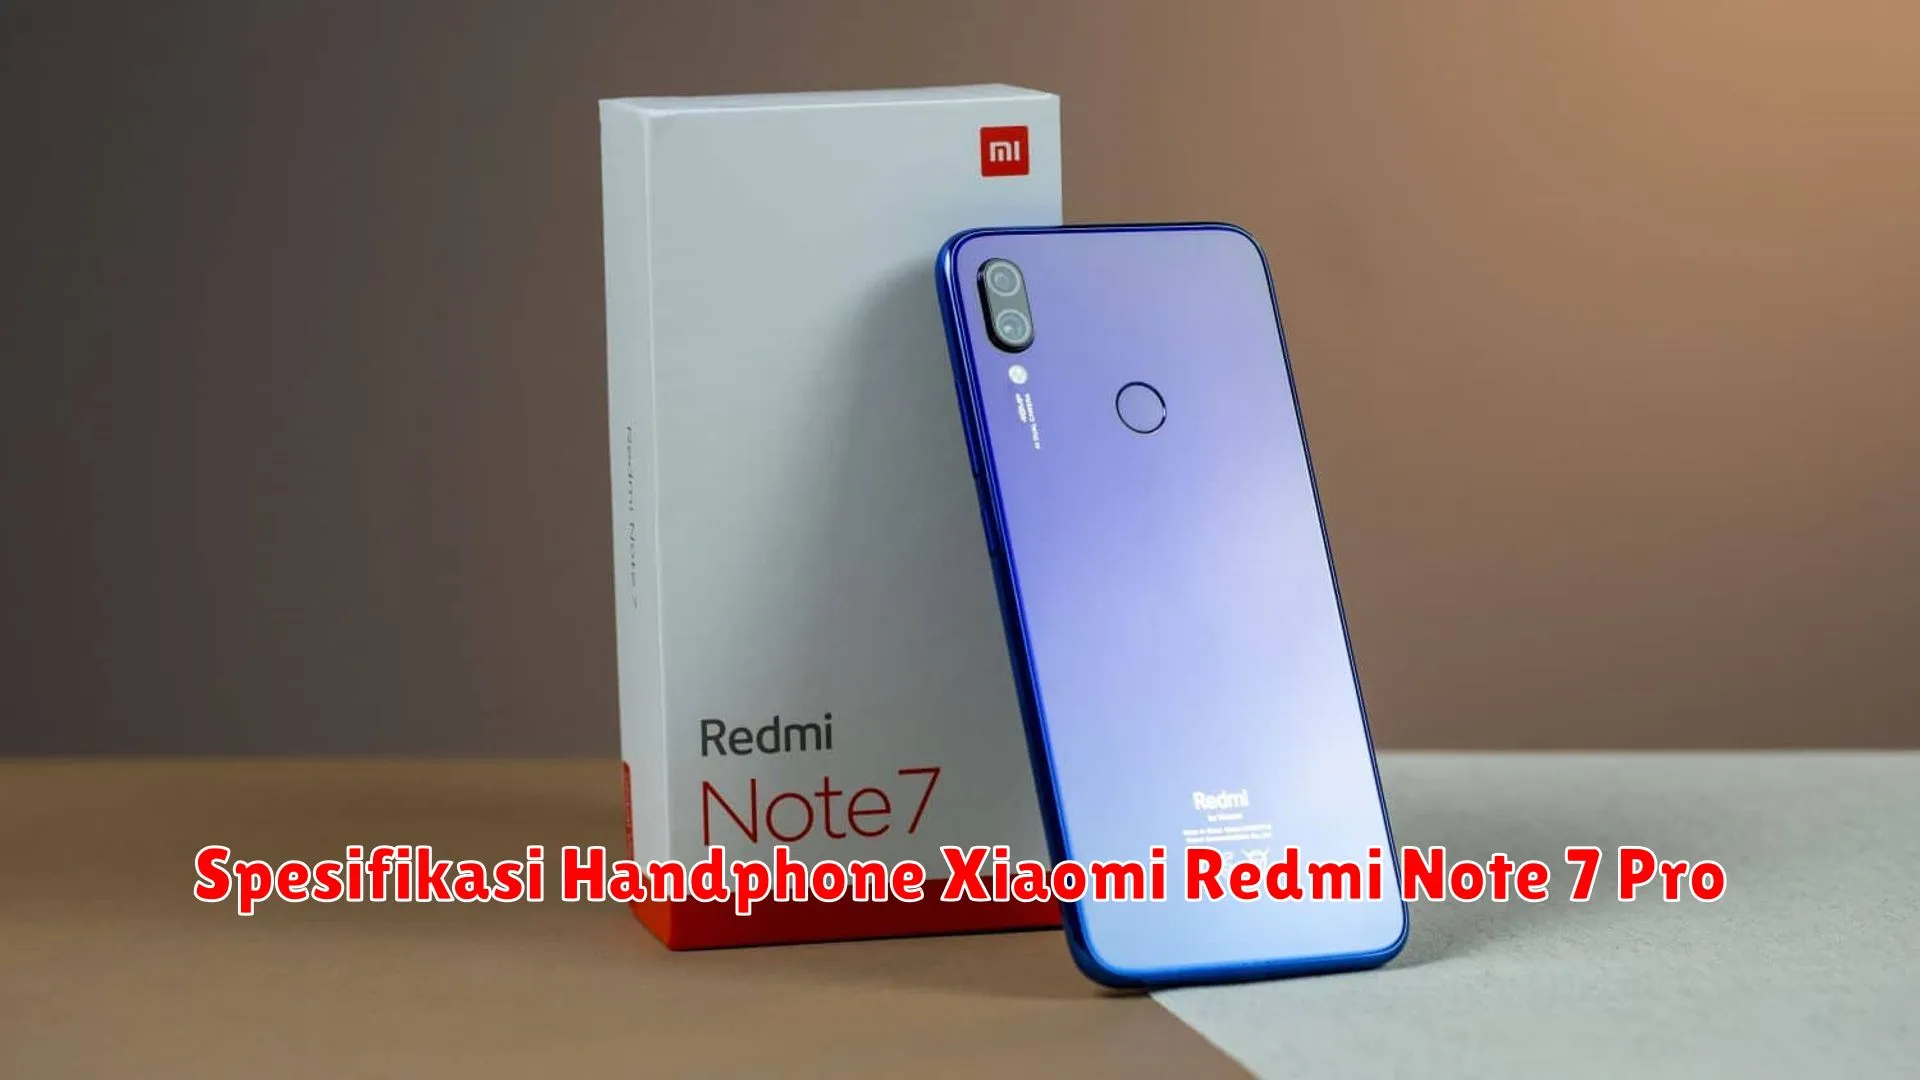 Spesifikasi Handphone Xiaomi Redmi Note 7 Pro